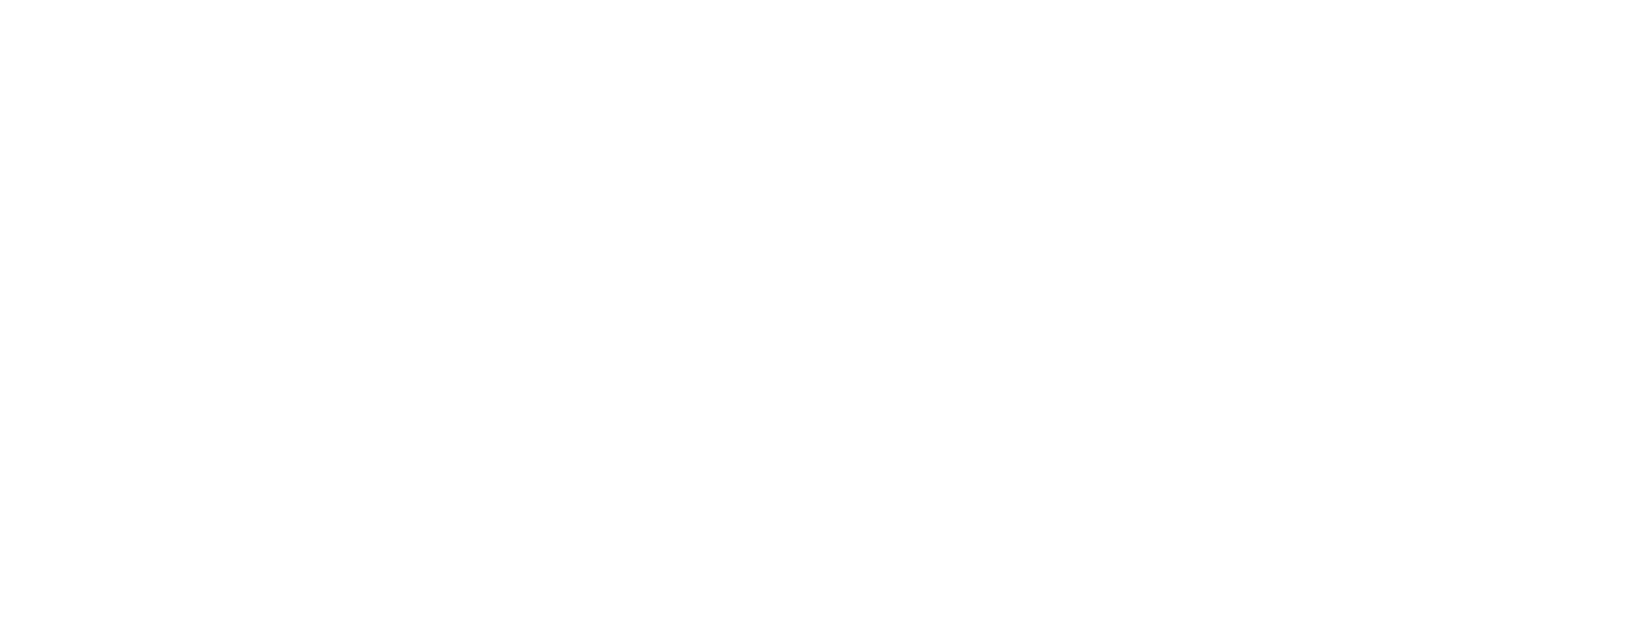 Avellino YSport